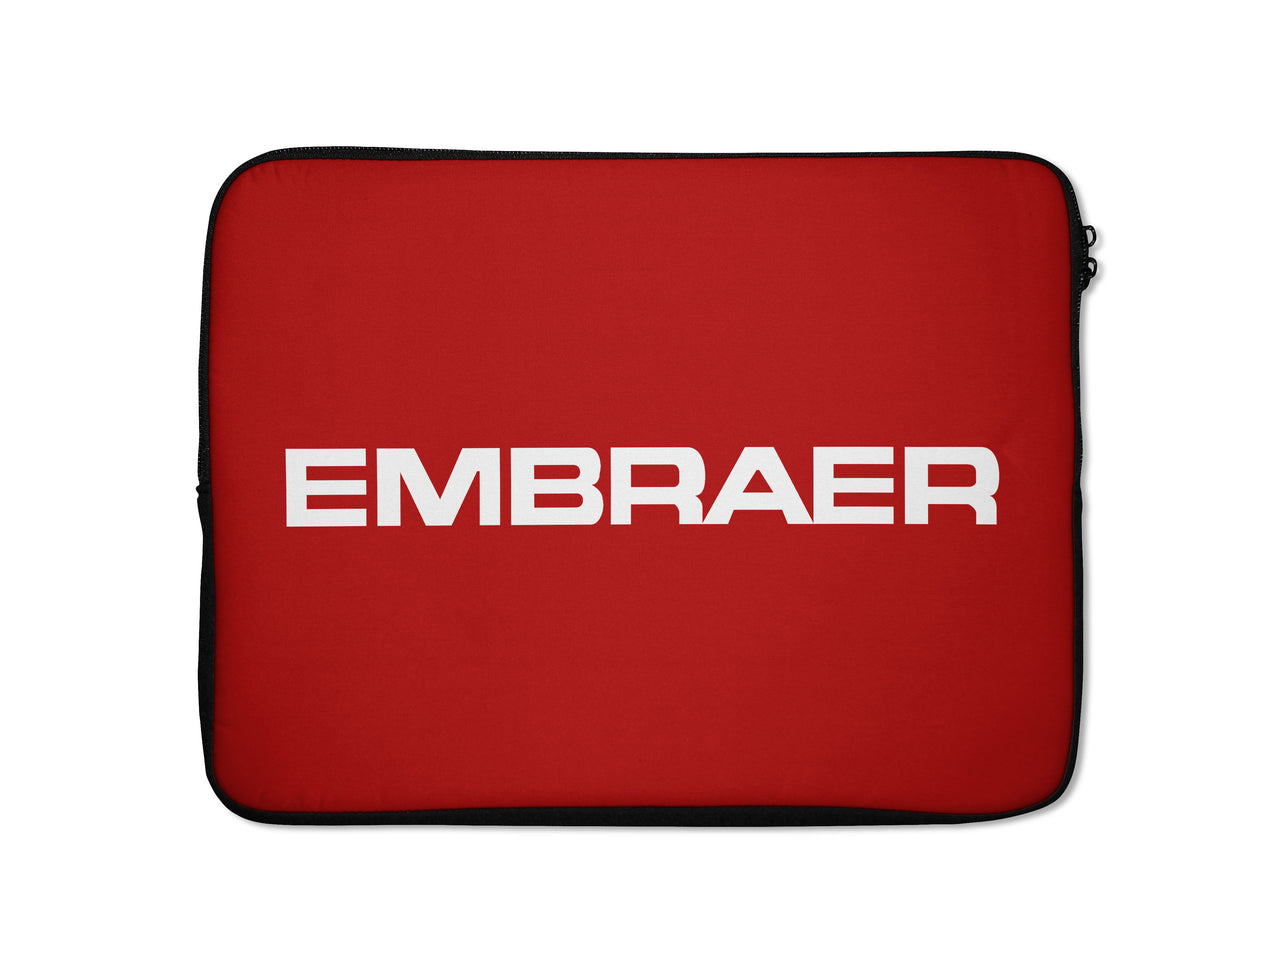 Embraer & Text Designed Laptop & Tablet Cases